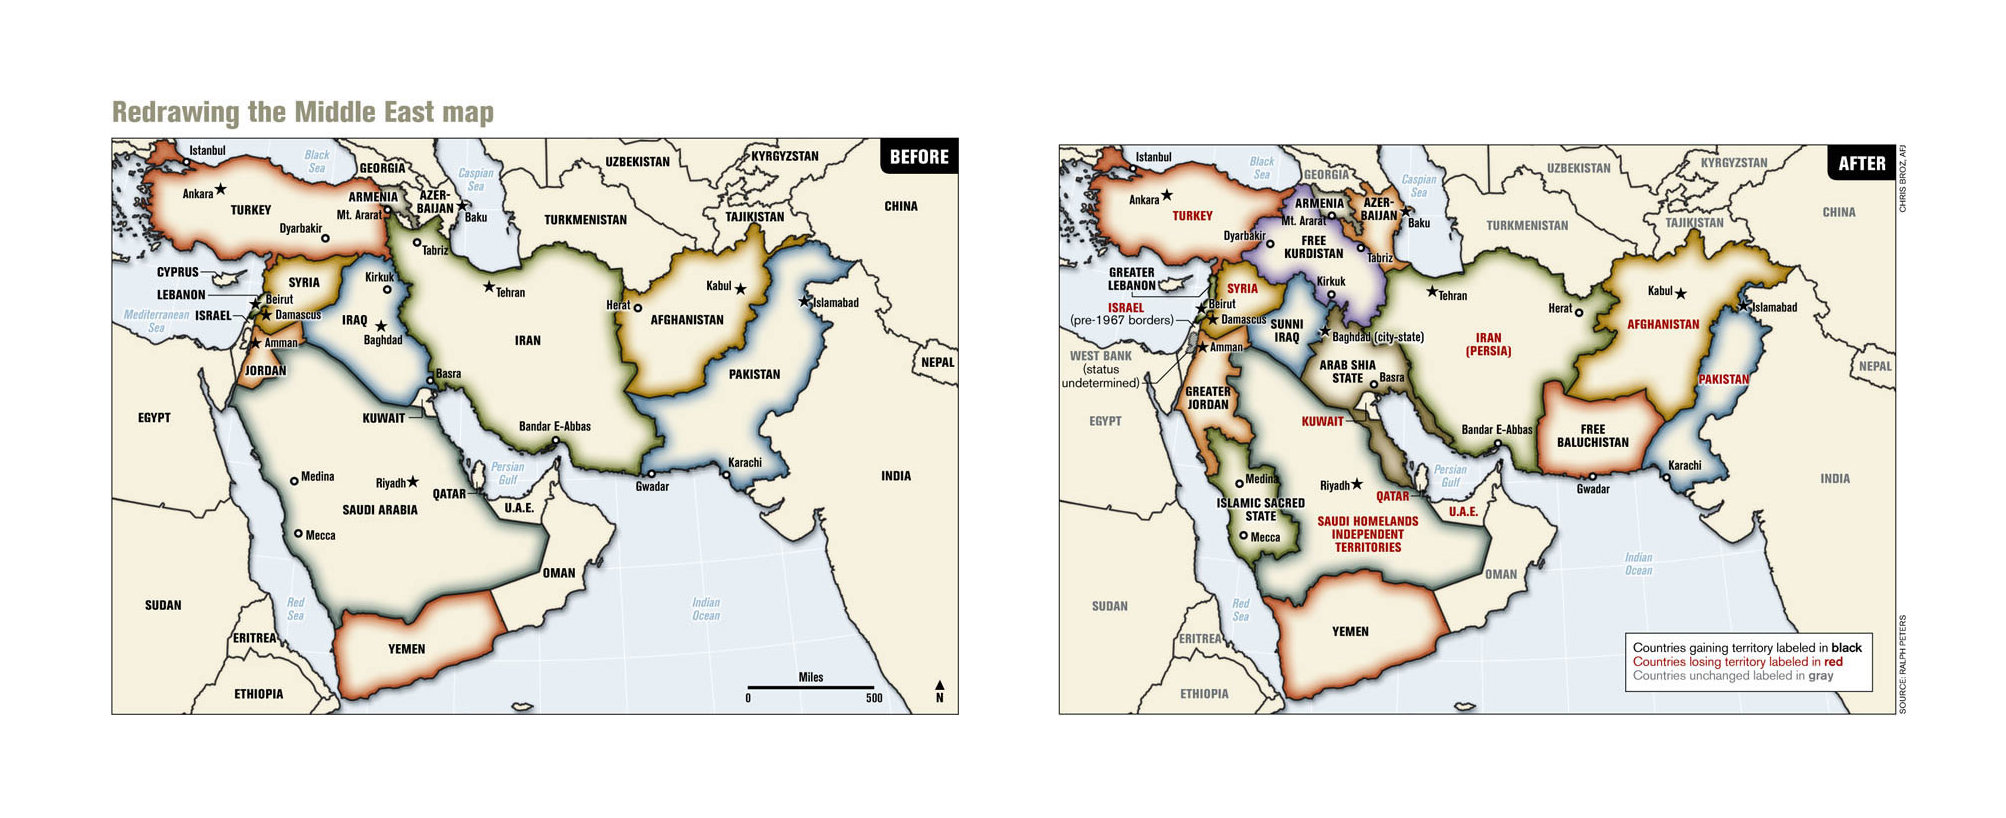 Cartes Moyen-Orient Avant & Après - Redrawing the Middle East Map, publiées par le Armed Forces Journal